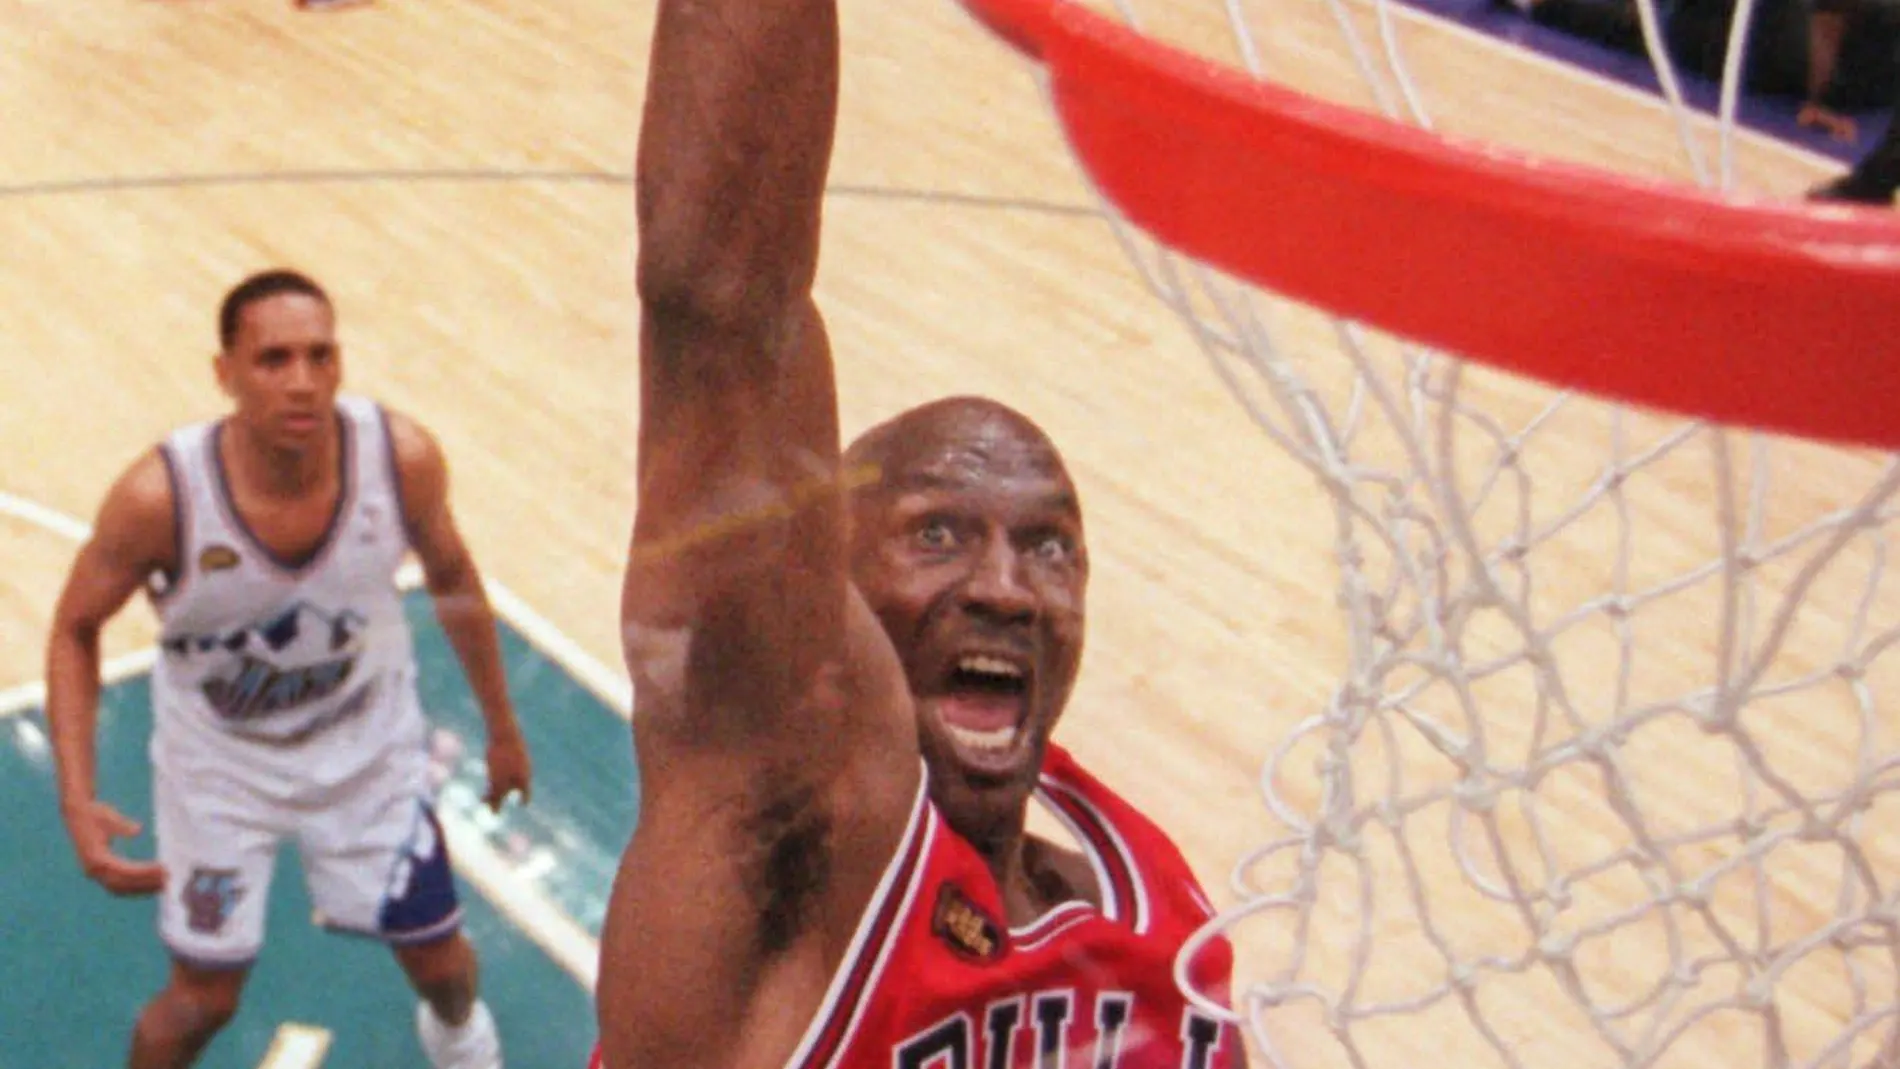 La biografía "Air" cuenta la biografía de Michael Jordan, el hombre que lo podía todo